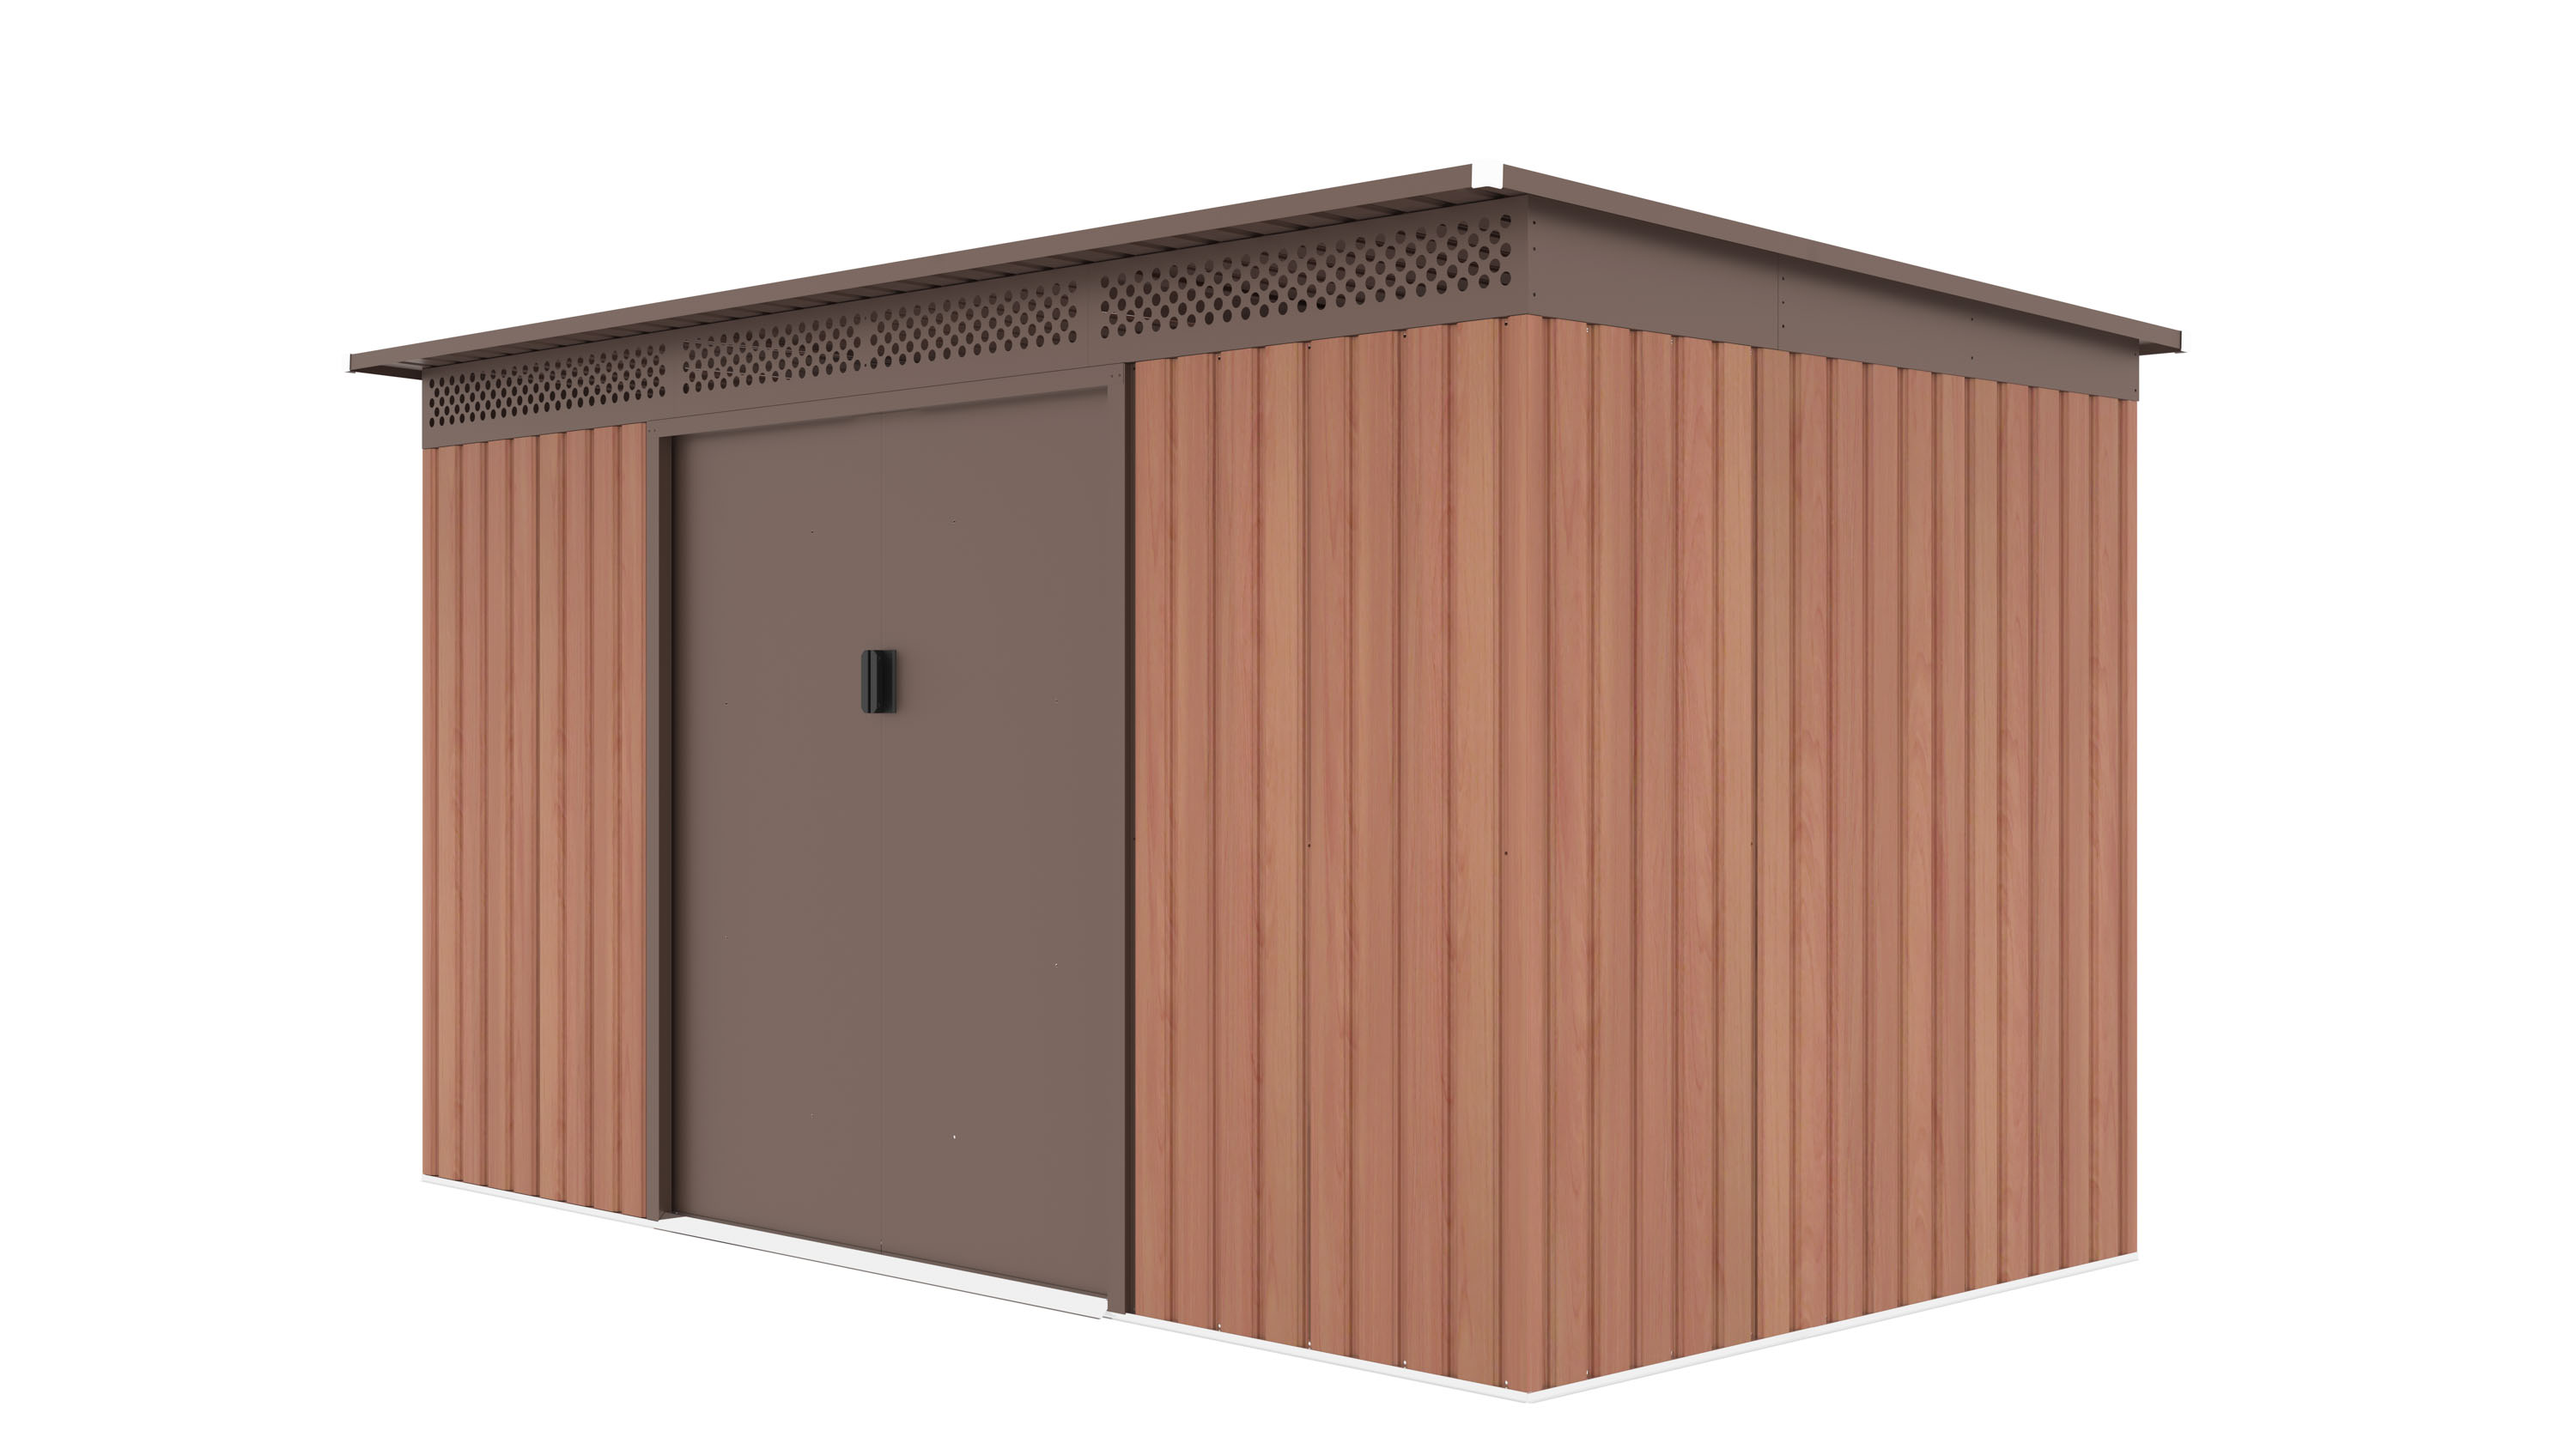 Obrázek galerie pro produkt G21 GRAH 700 hnědý + AKCE+, Zahradní domek na nářadí plechový s pultovou střechou, 340x206cm